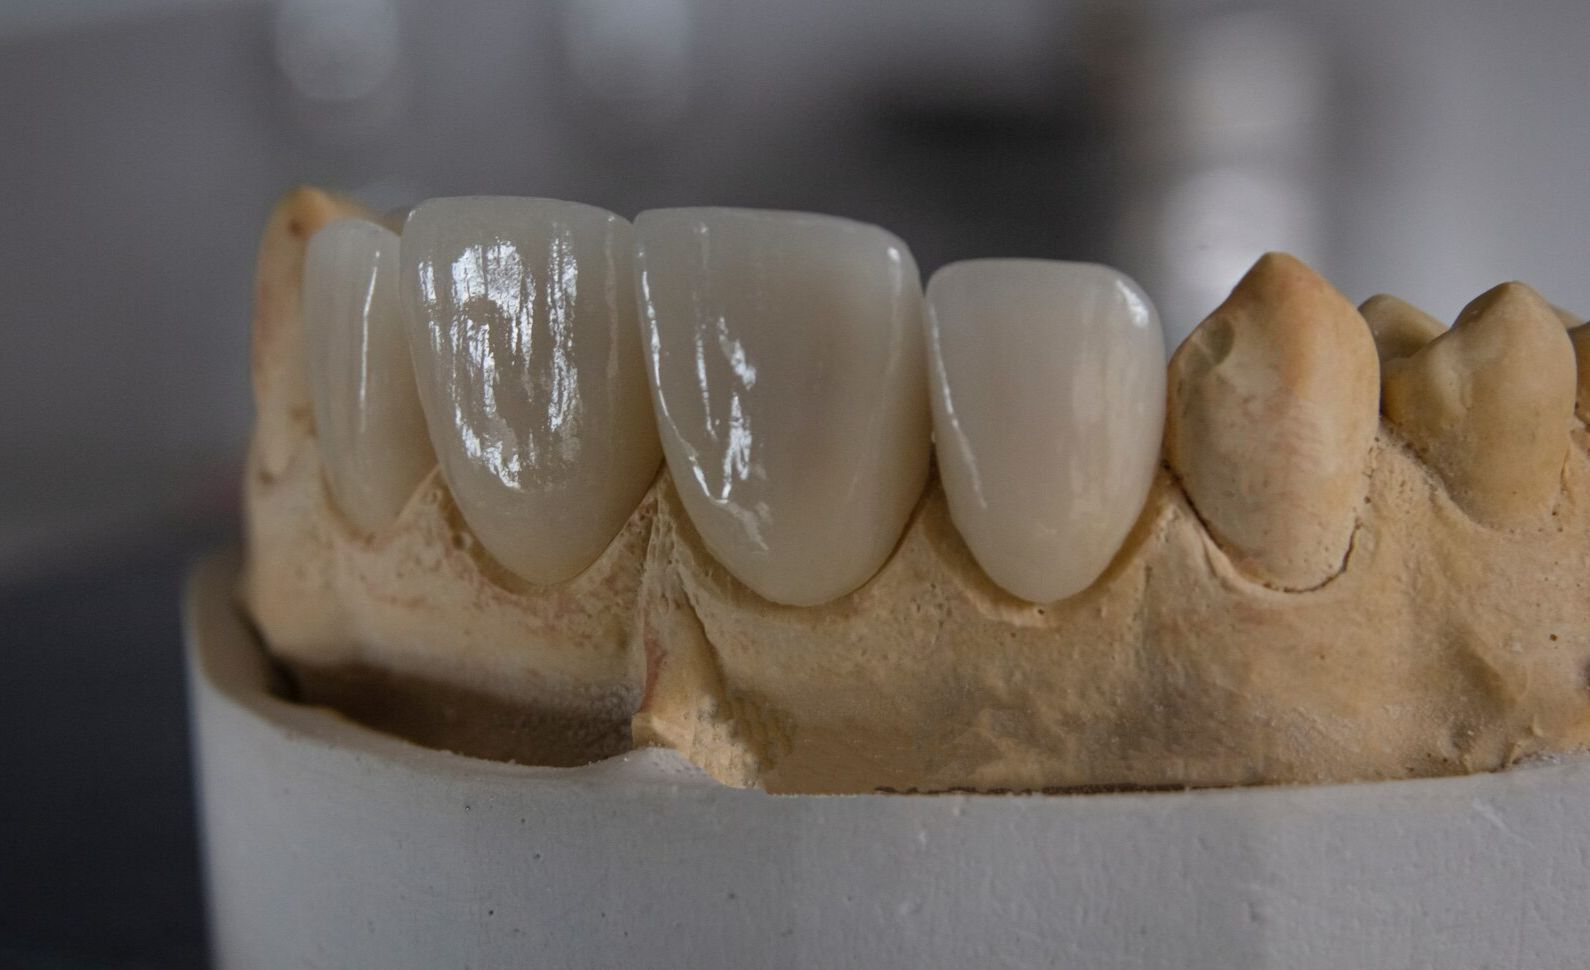 красивые зубы из металлокерамики фото